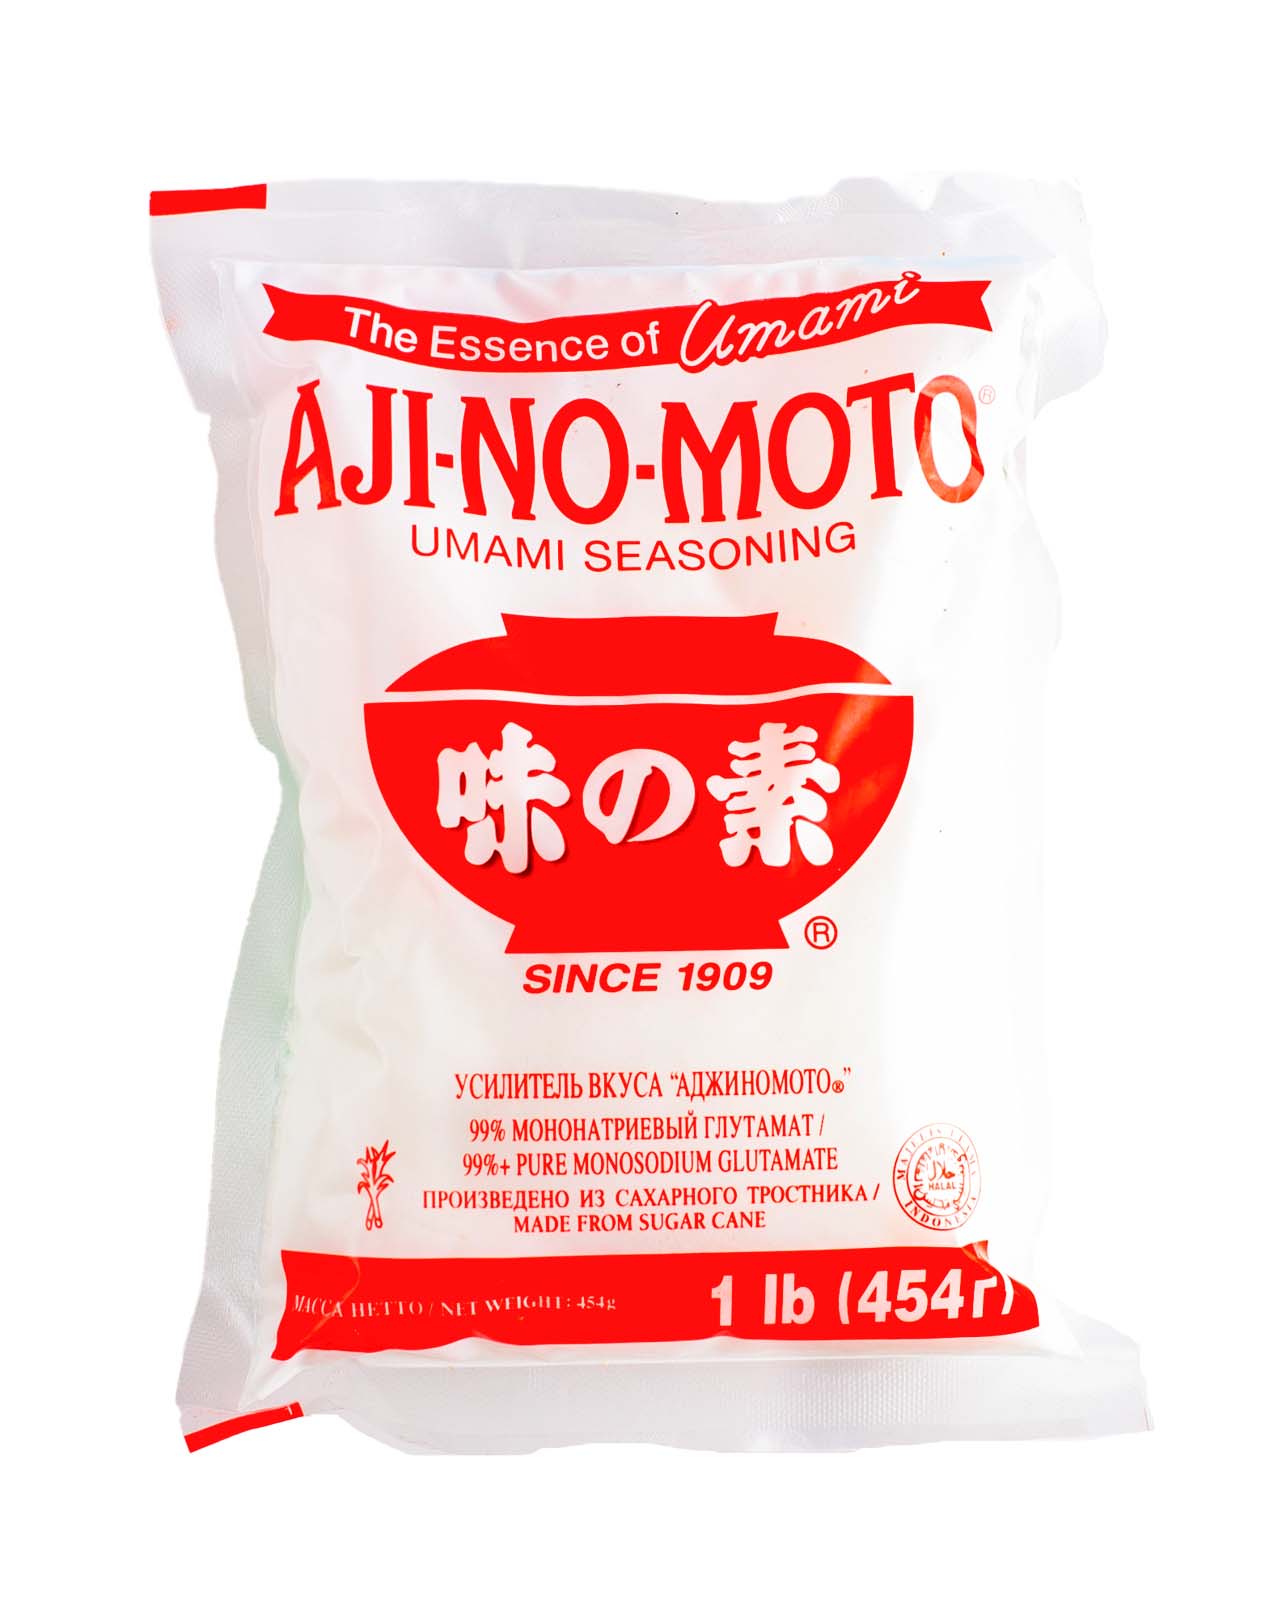 Глютамат натрия также известен как японская соль Ajino Moto и используется в качестве усилителя.